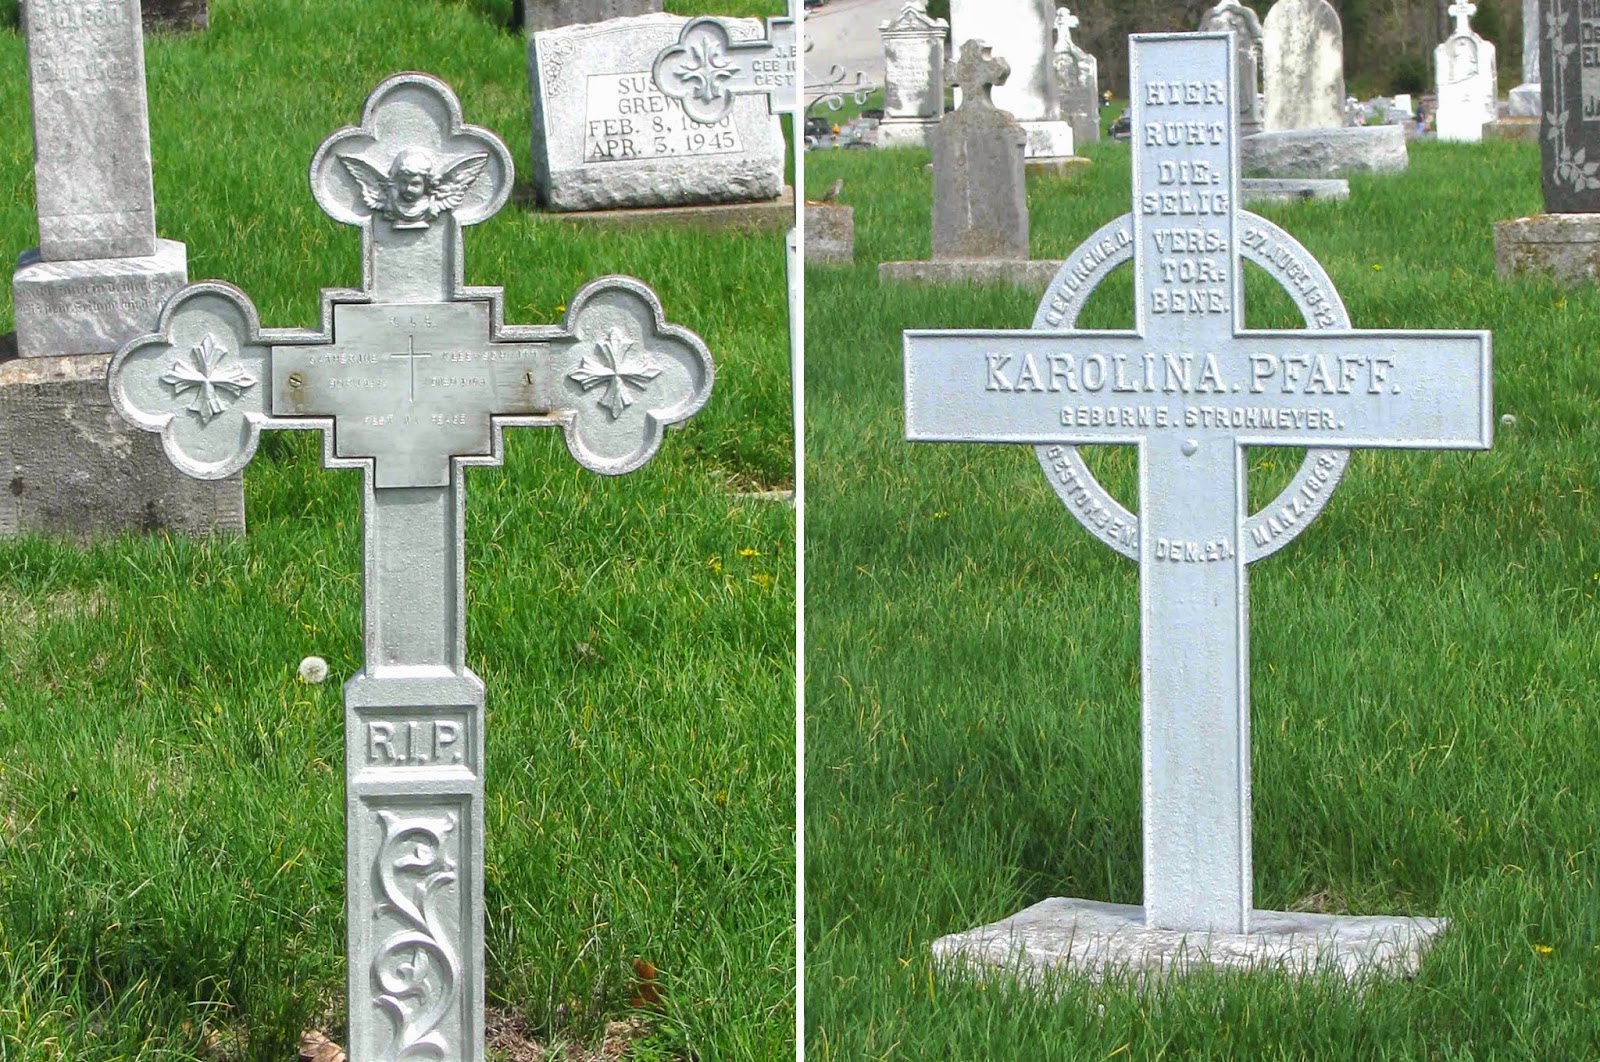 http://agraveinterest.blogspot.fr/2011/04/different-types-of-crosses-in-cemetery.html